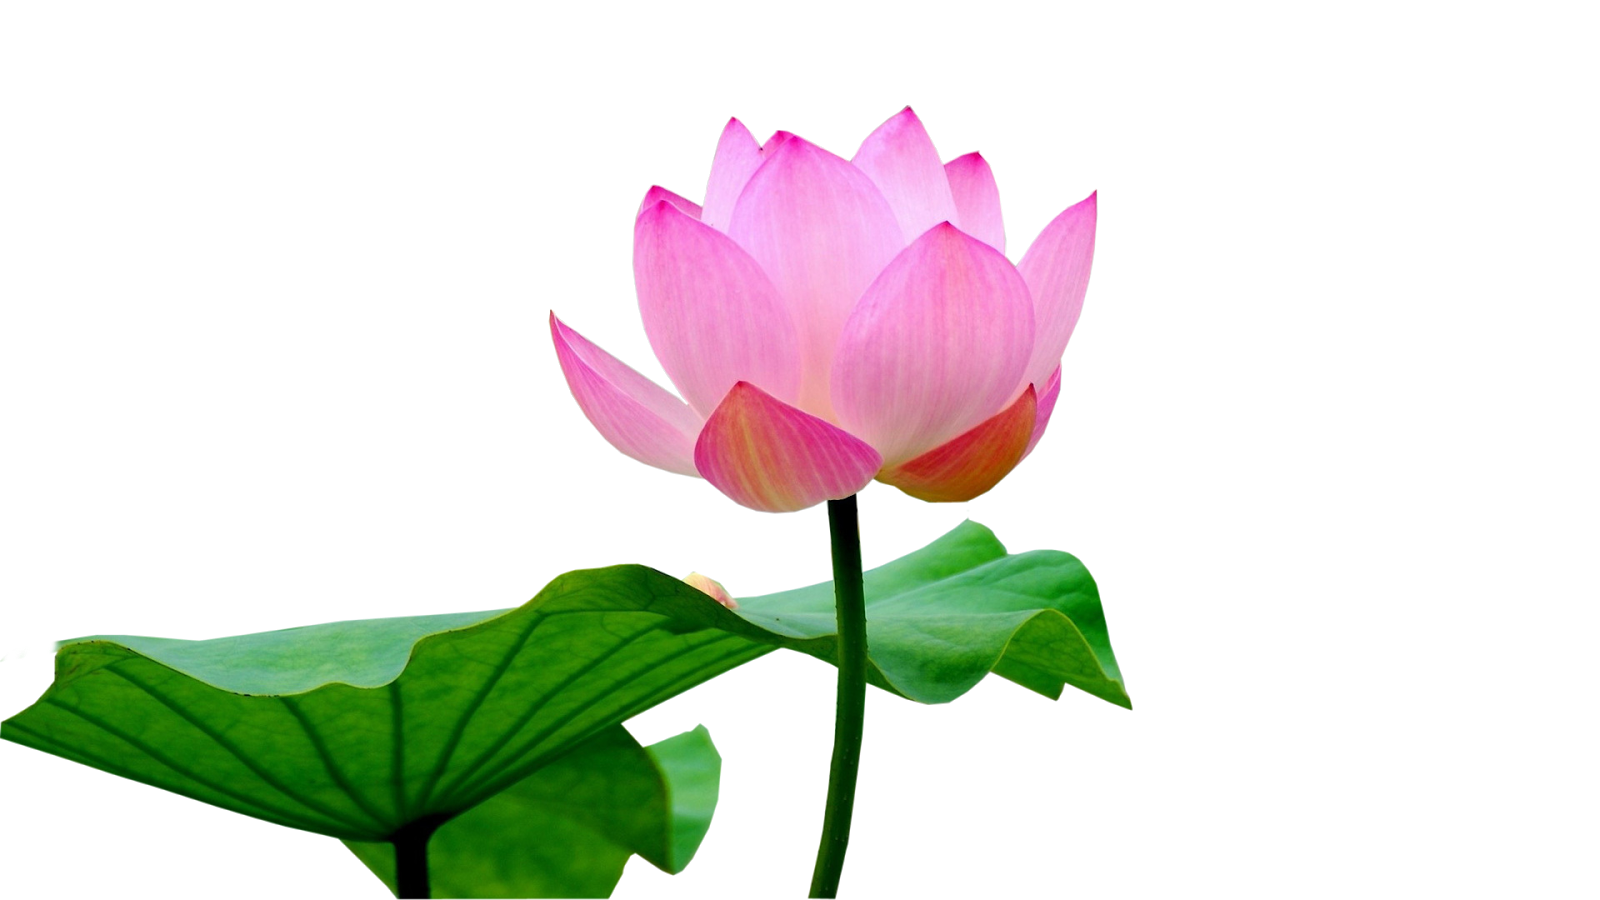 Immagine Trasparente del fiore del fiore del loto